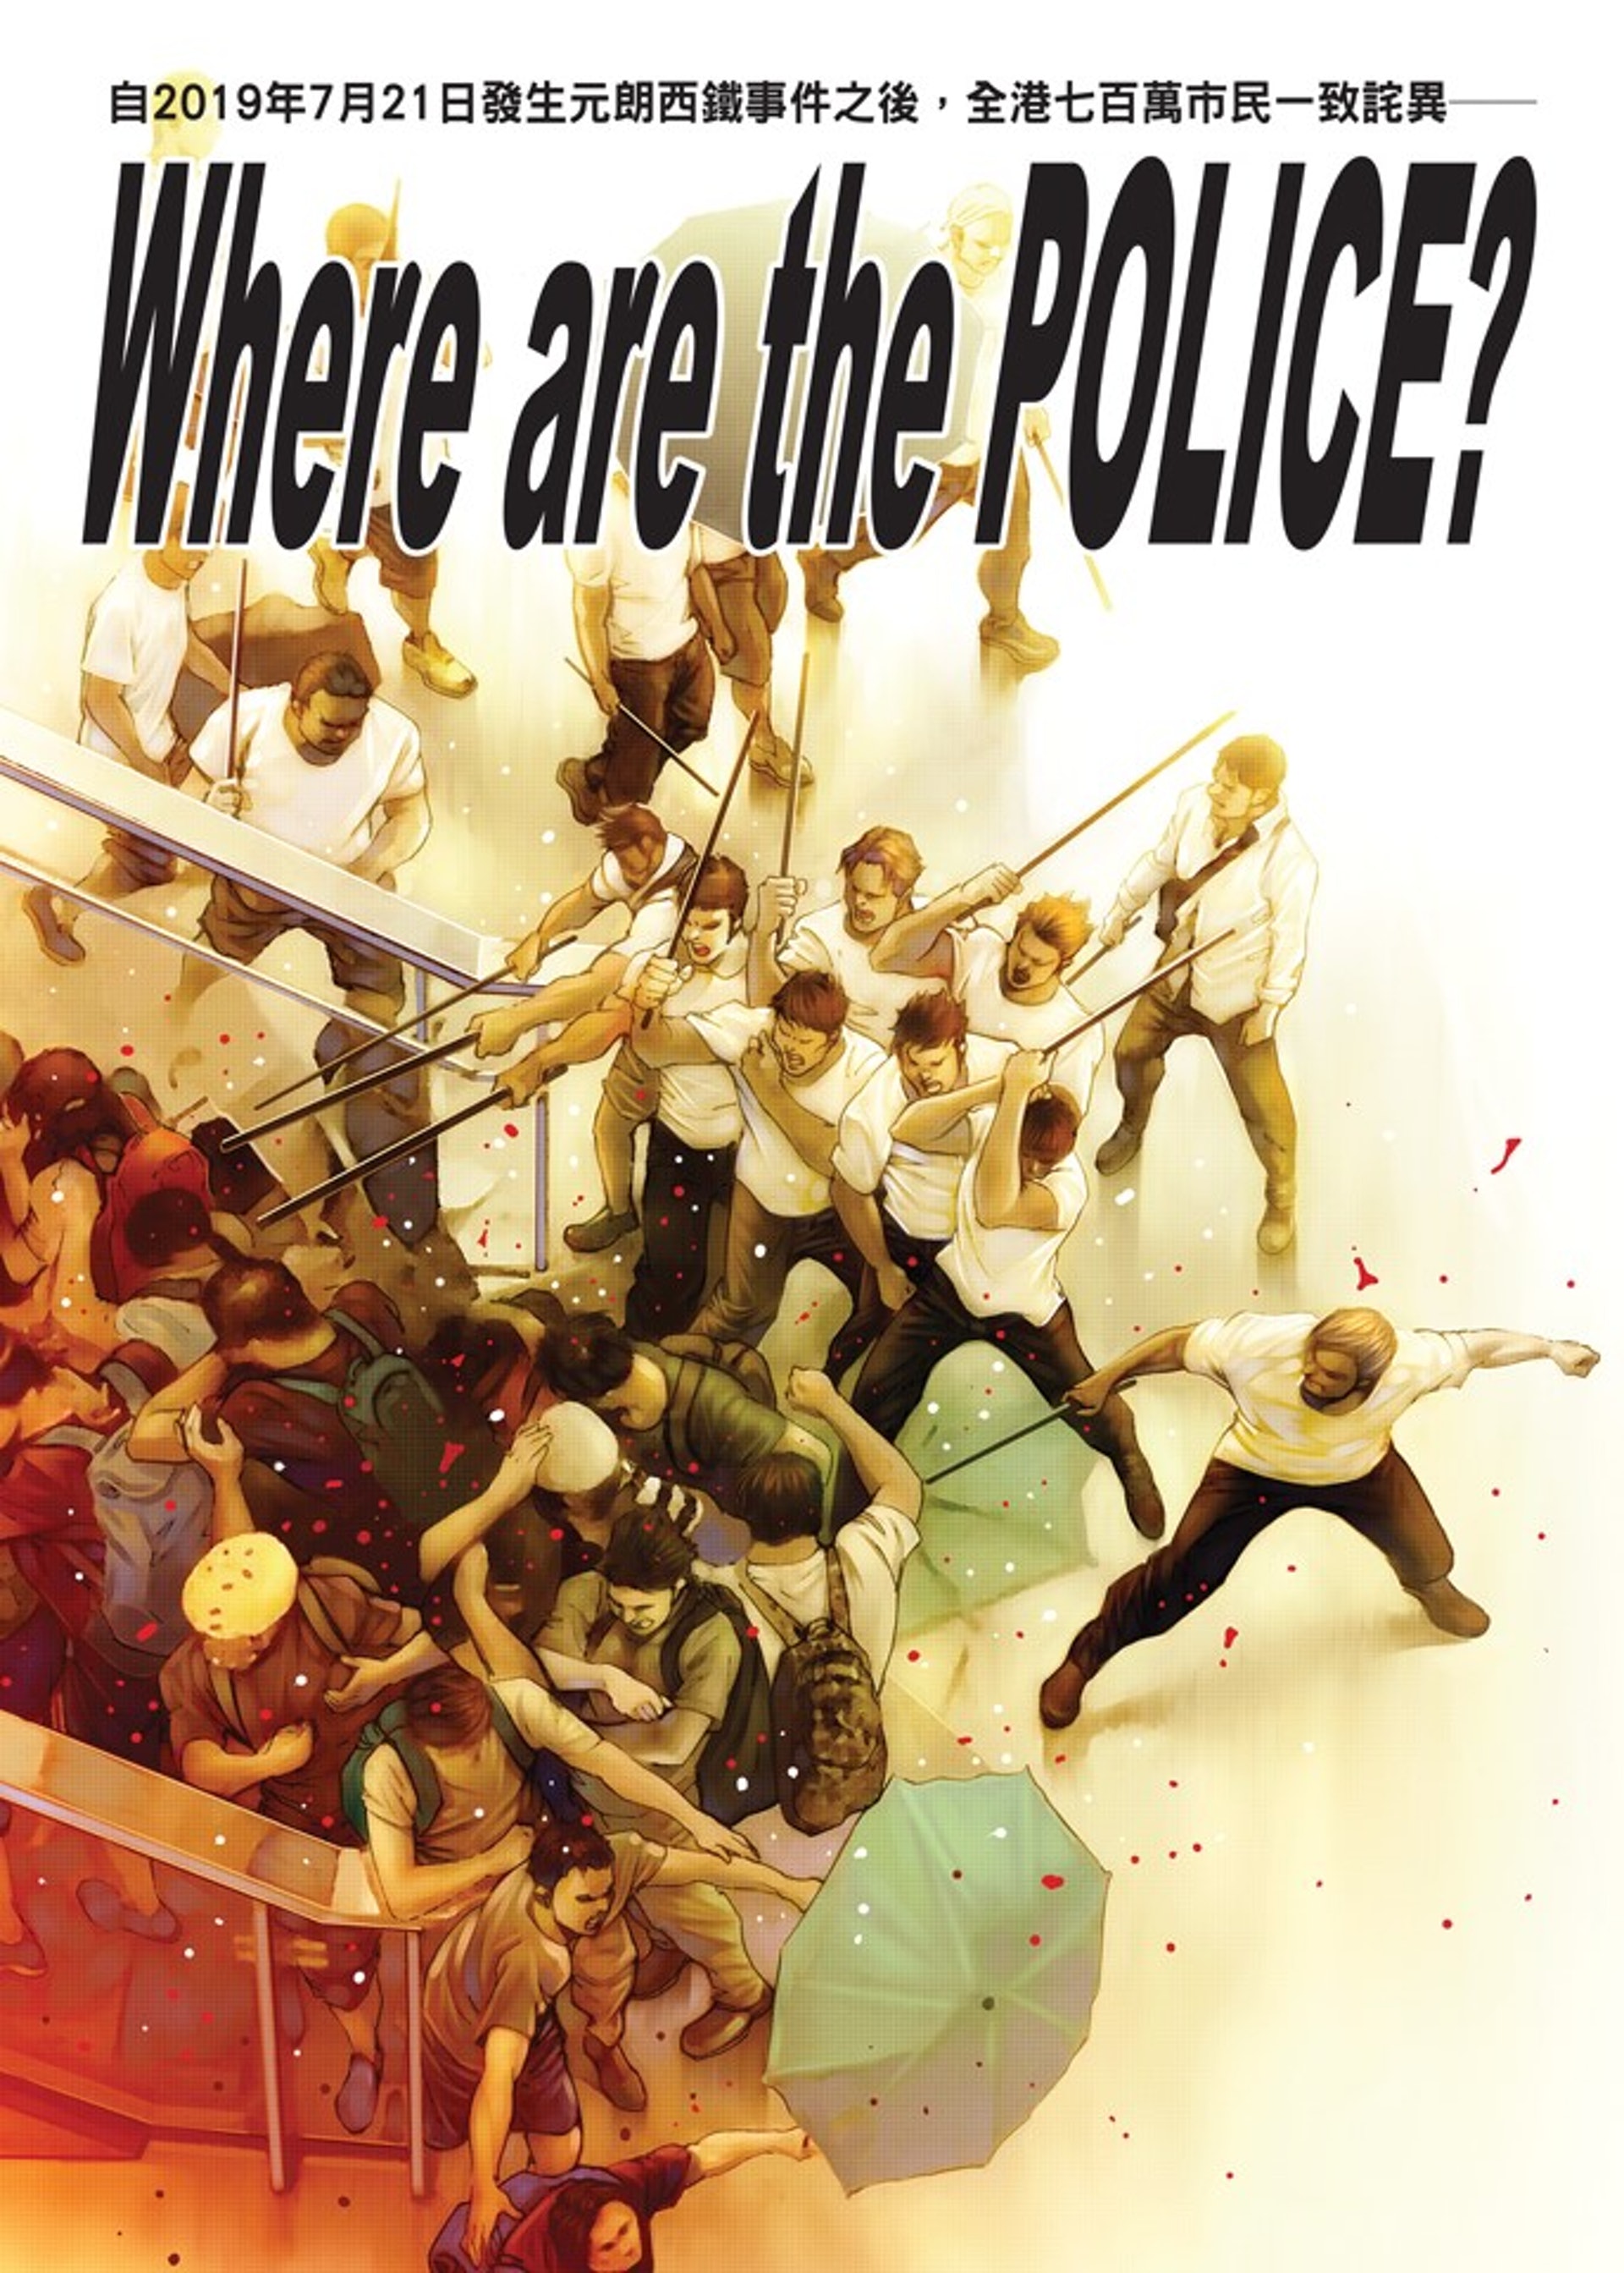 古惑仔】最新封面重現警長舉槍指向示威者緊貼香港時事獲讚 image